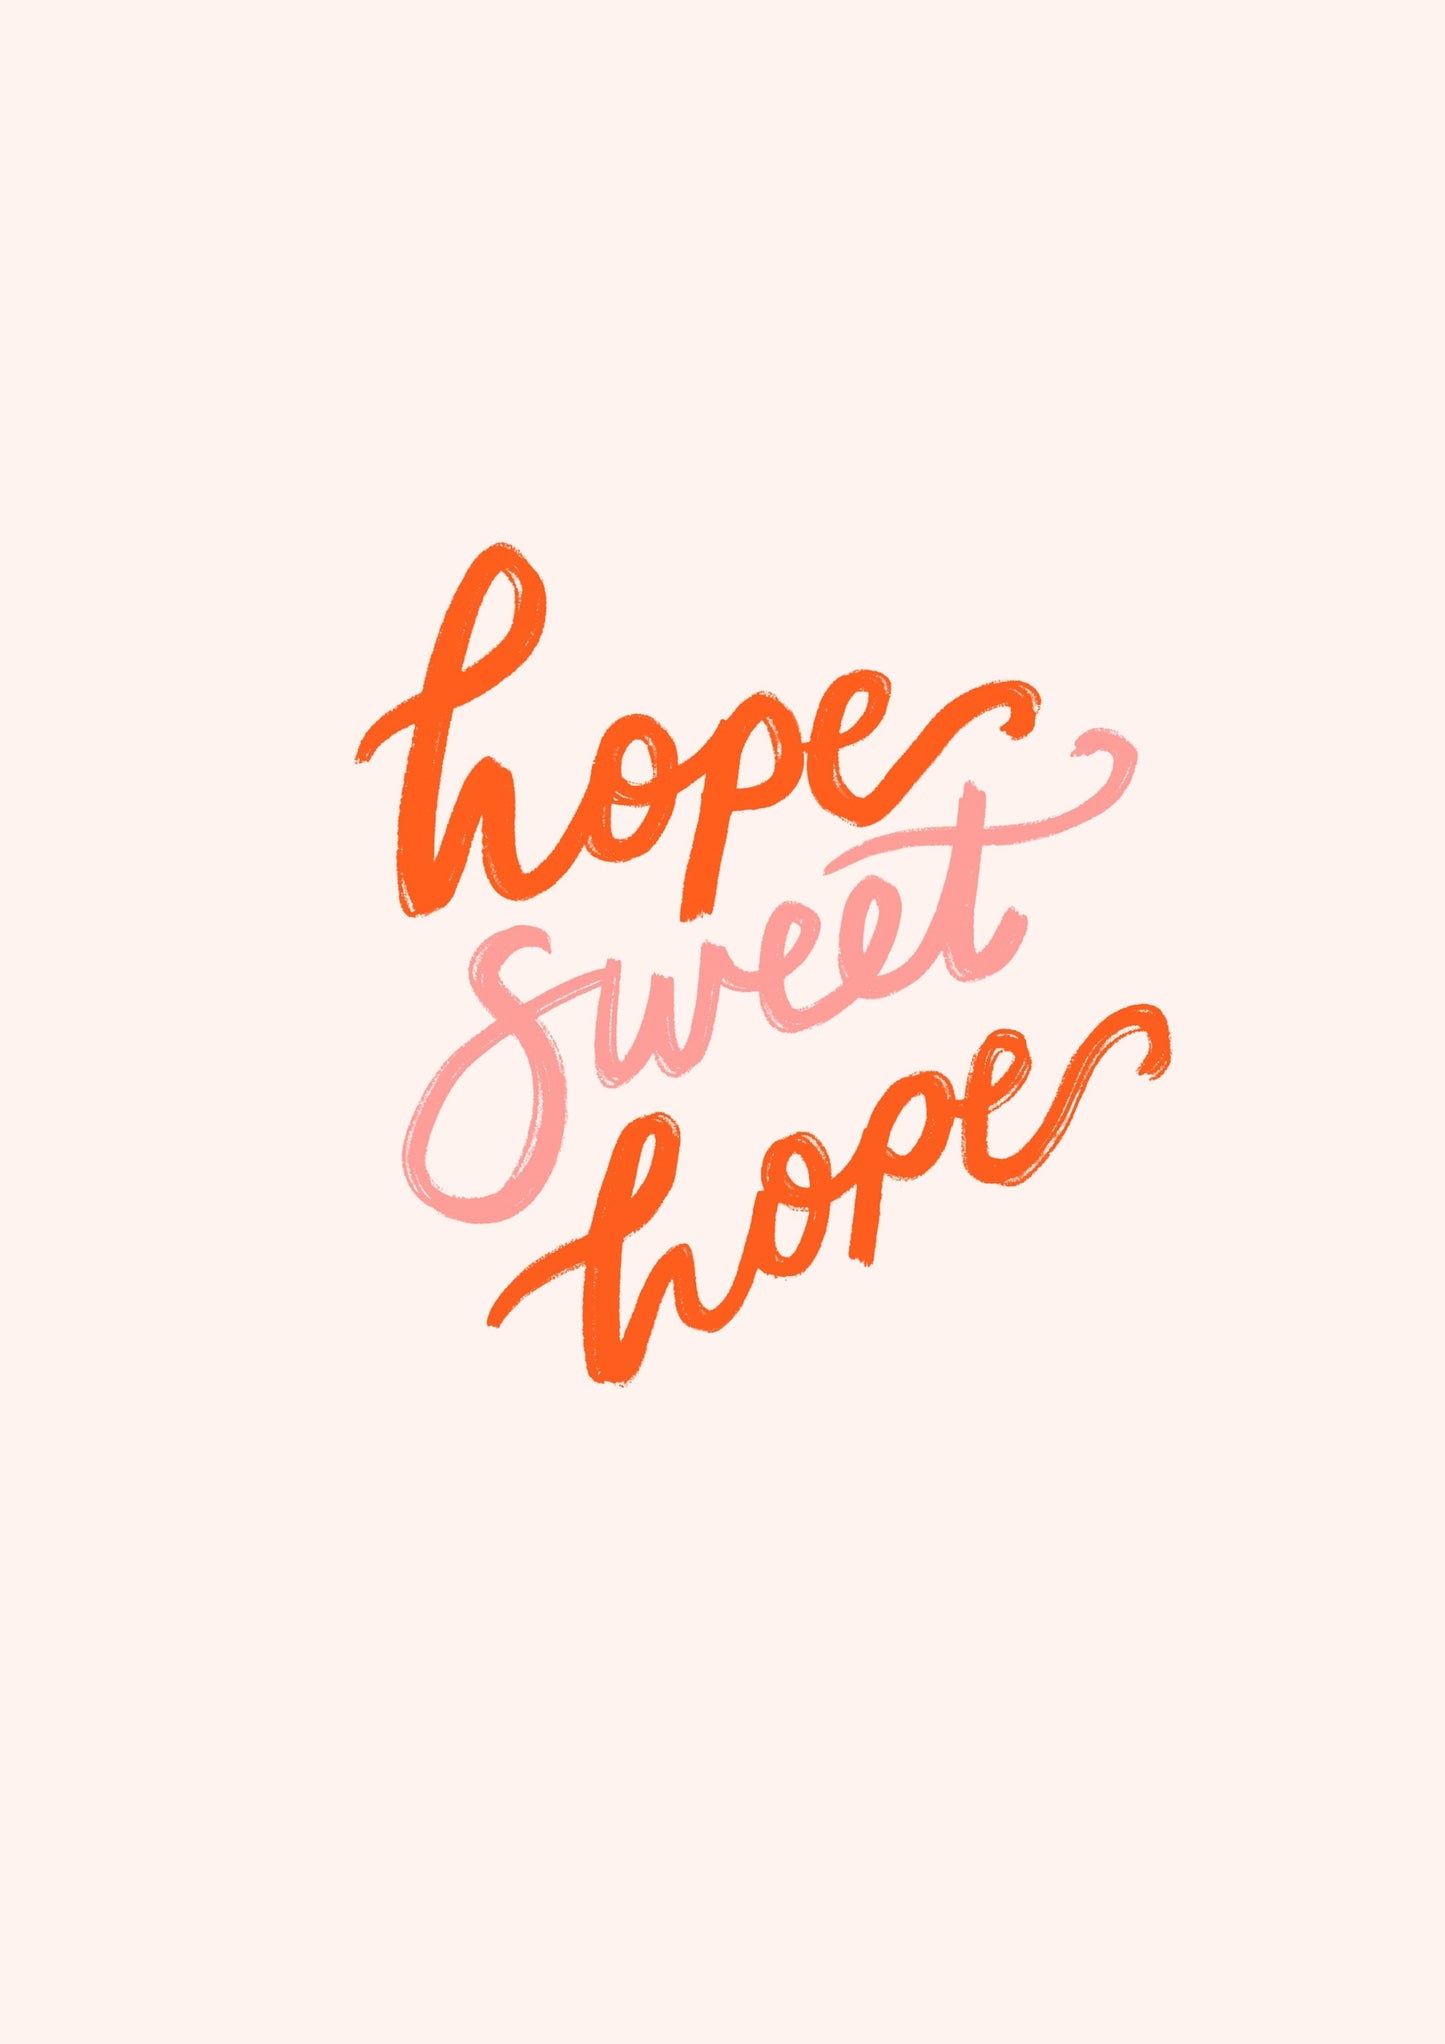 A4 Hope Sweet Hope